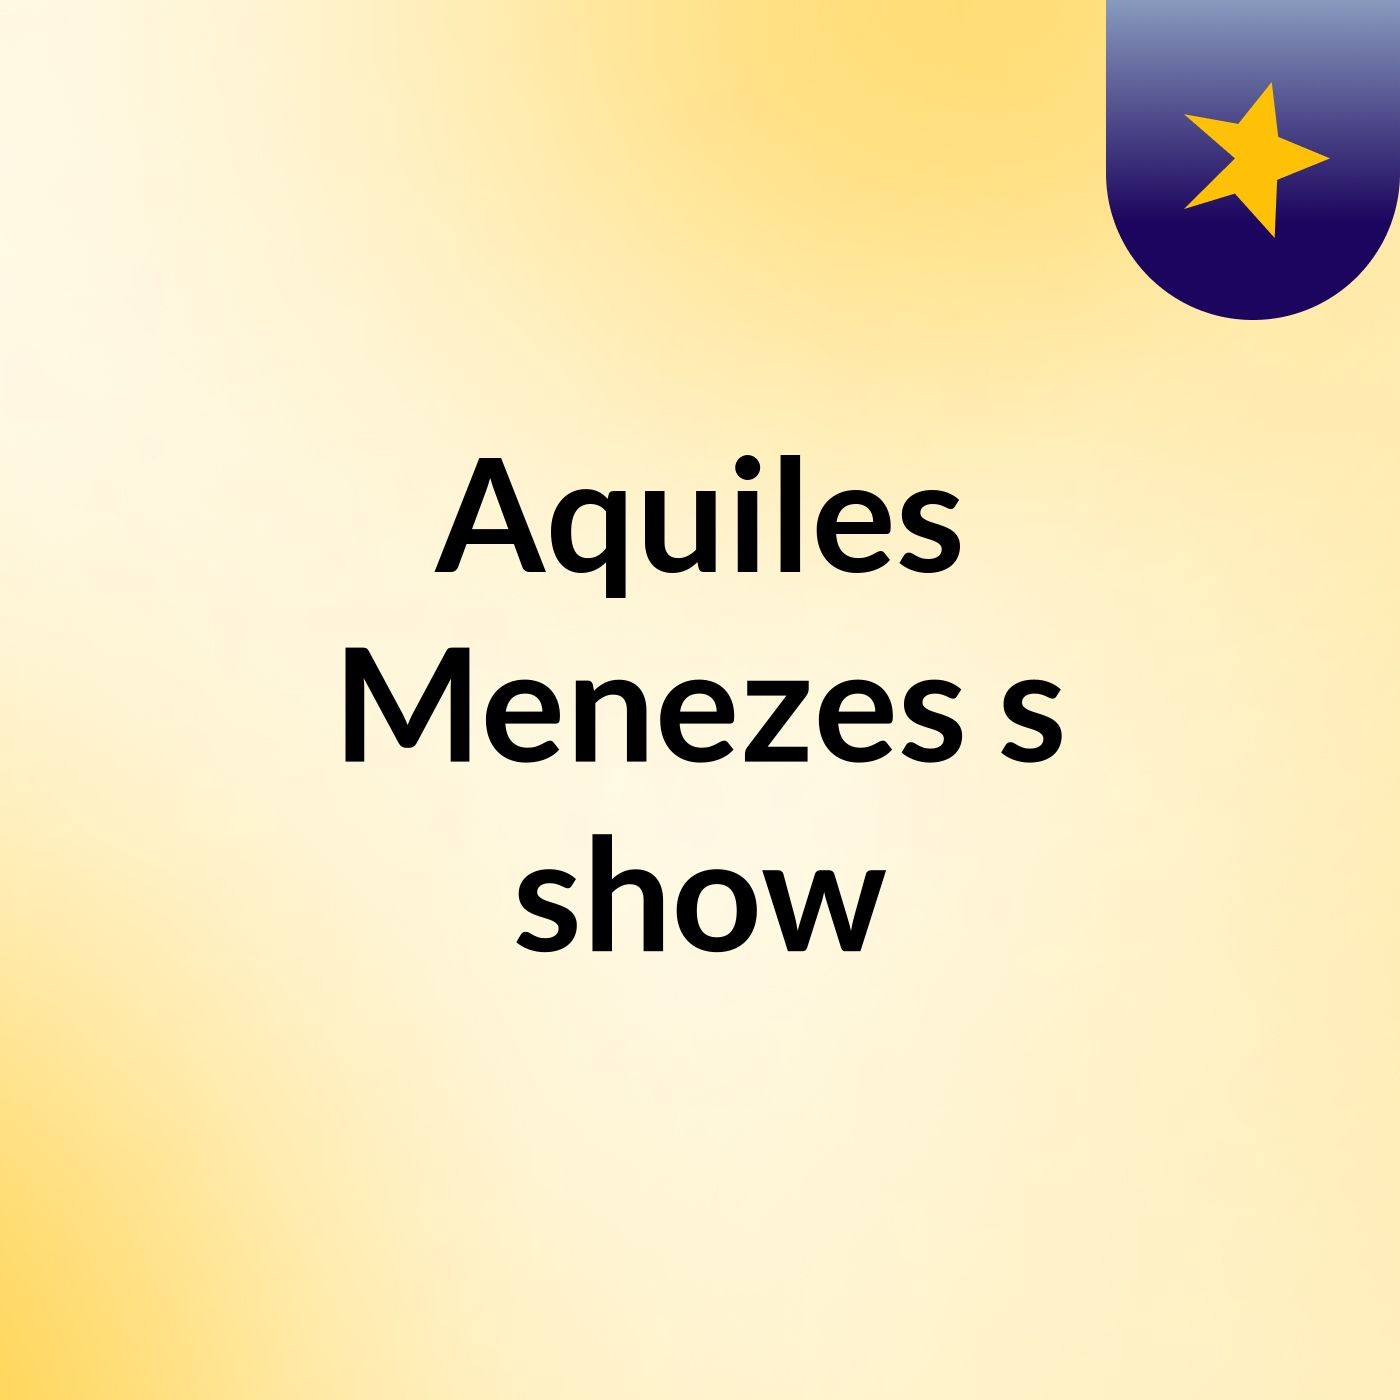 Aquiles Menezes's show